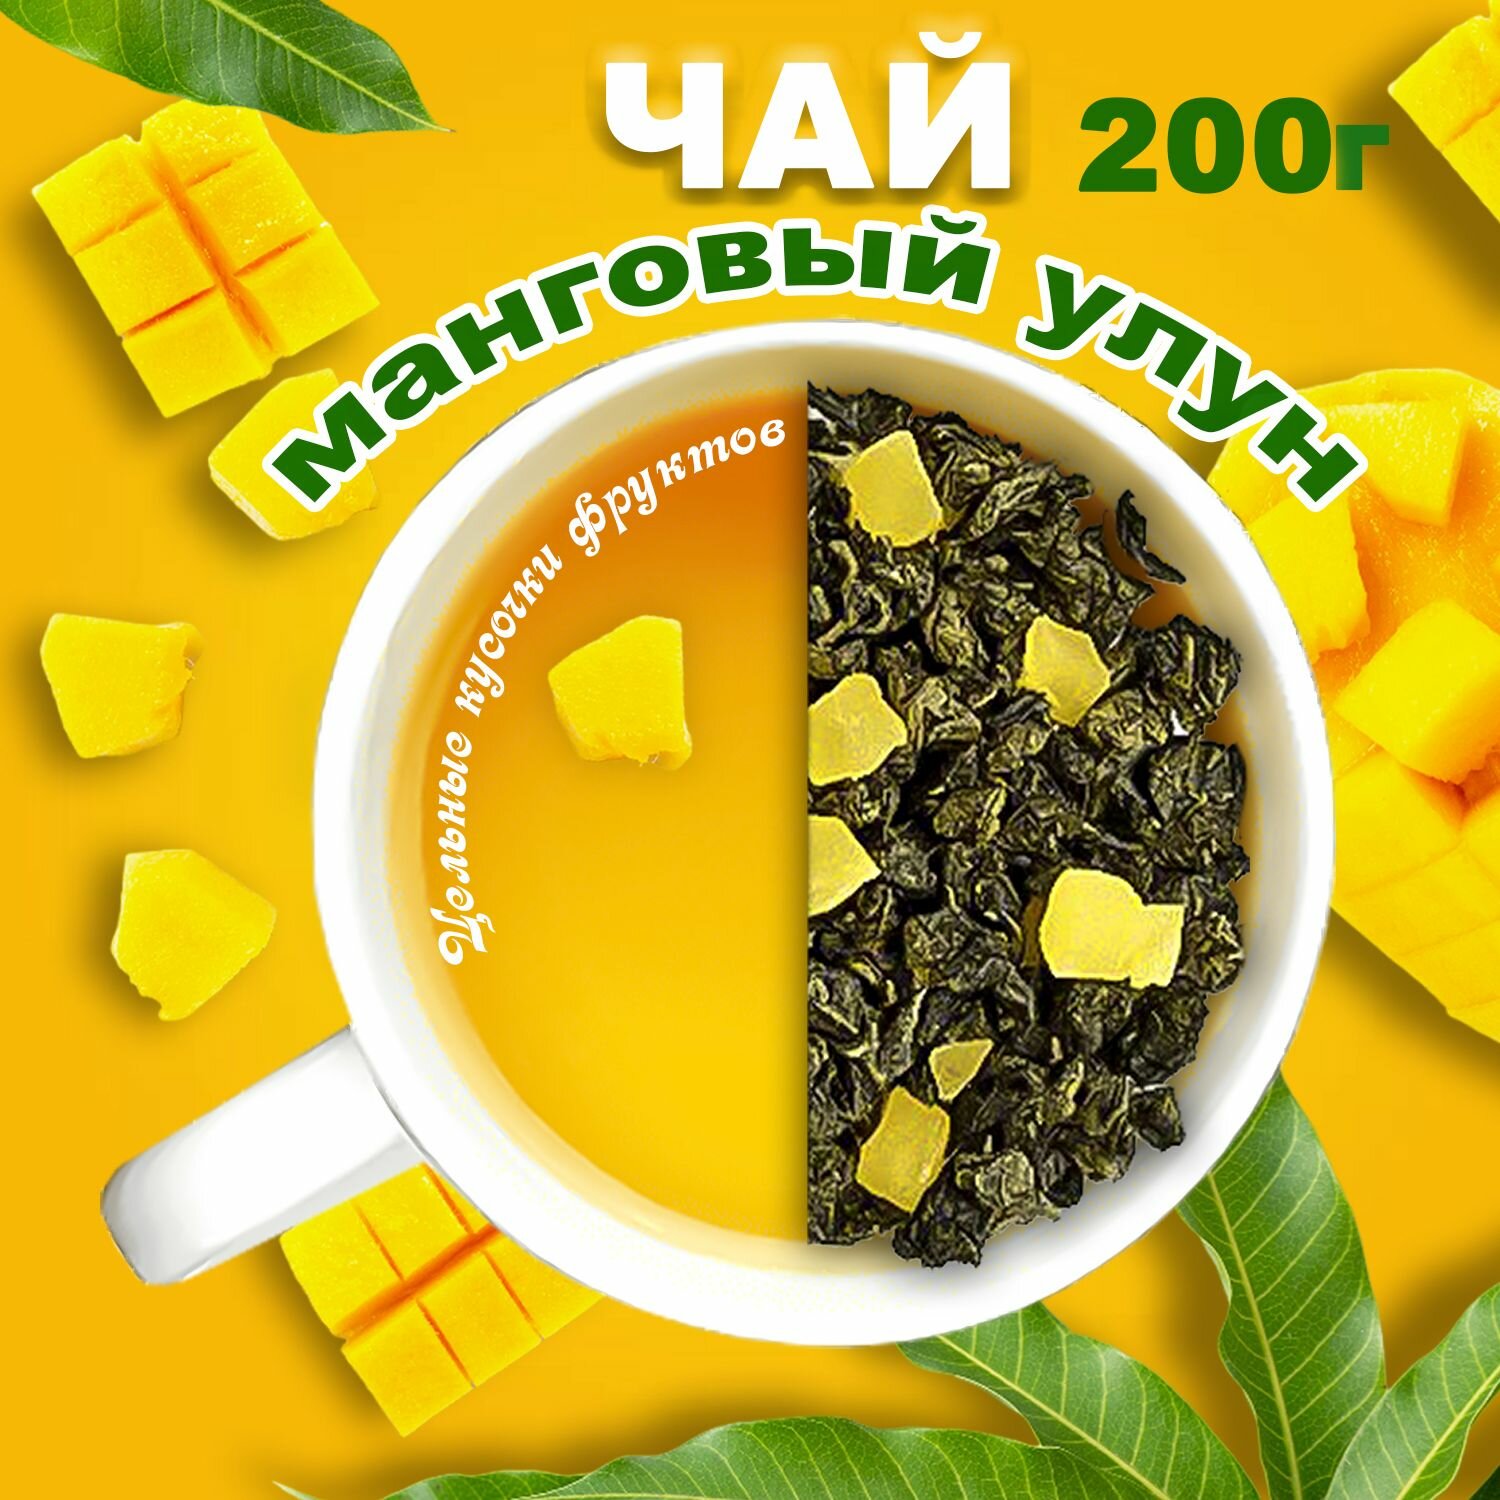 Манговый улун зеленый чай листовой с кусочками манго на осонове Те гуань инь 200 г